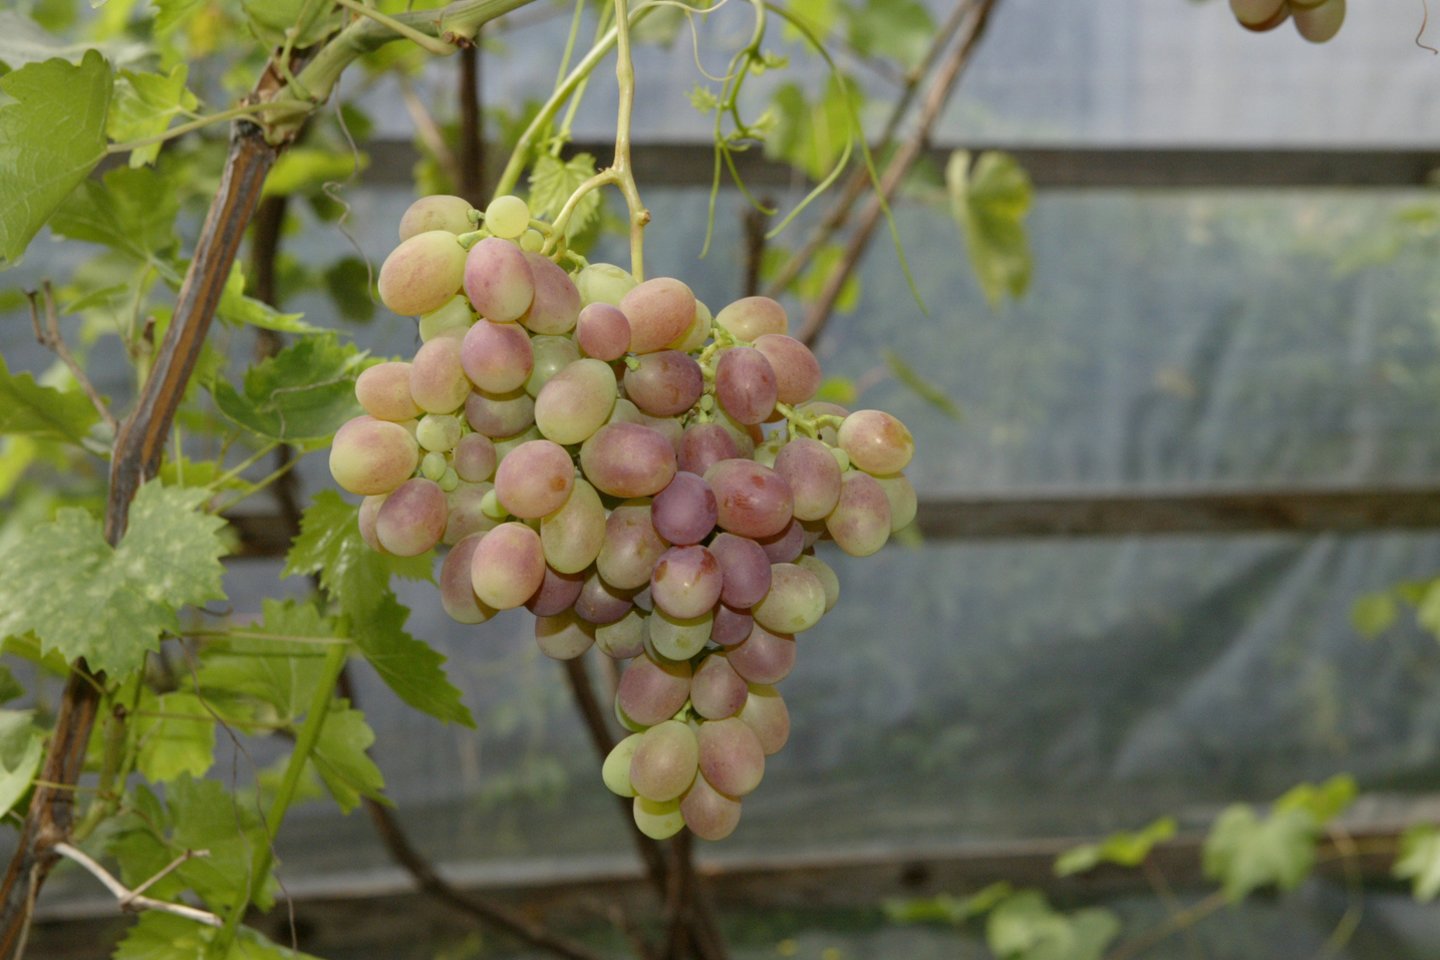 Europos Sąjunga pagaliau pripažino Lietuvą vynuogių auginimo šalimi, taip atverdama daugiau galimybių vystytis vynuogininkystei ir vyndarystei.<br>S.Bagdonavičiaus nuotr.